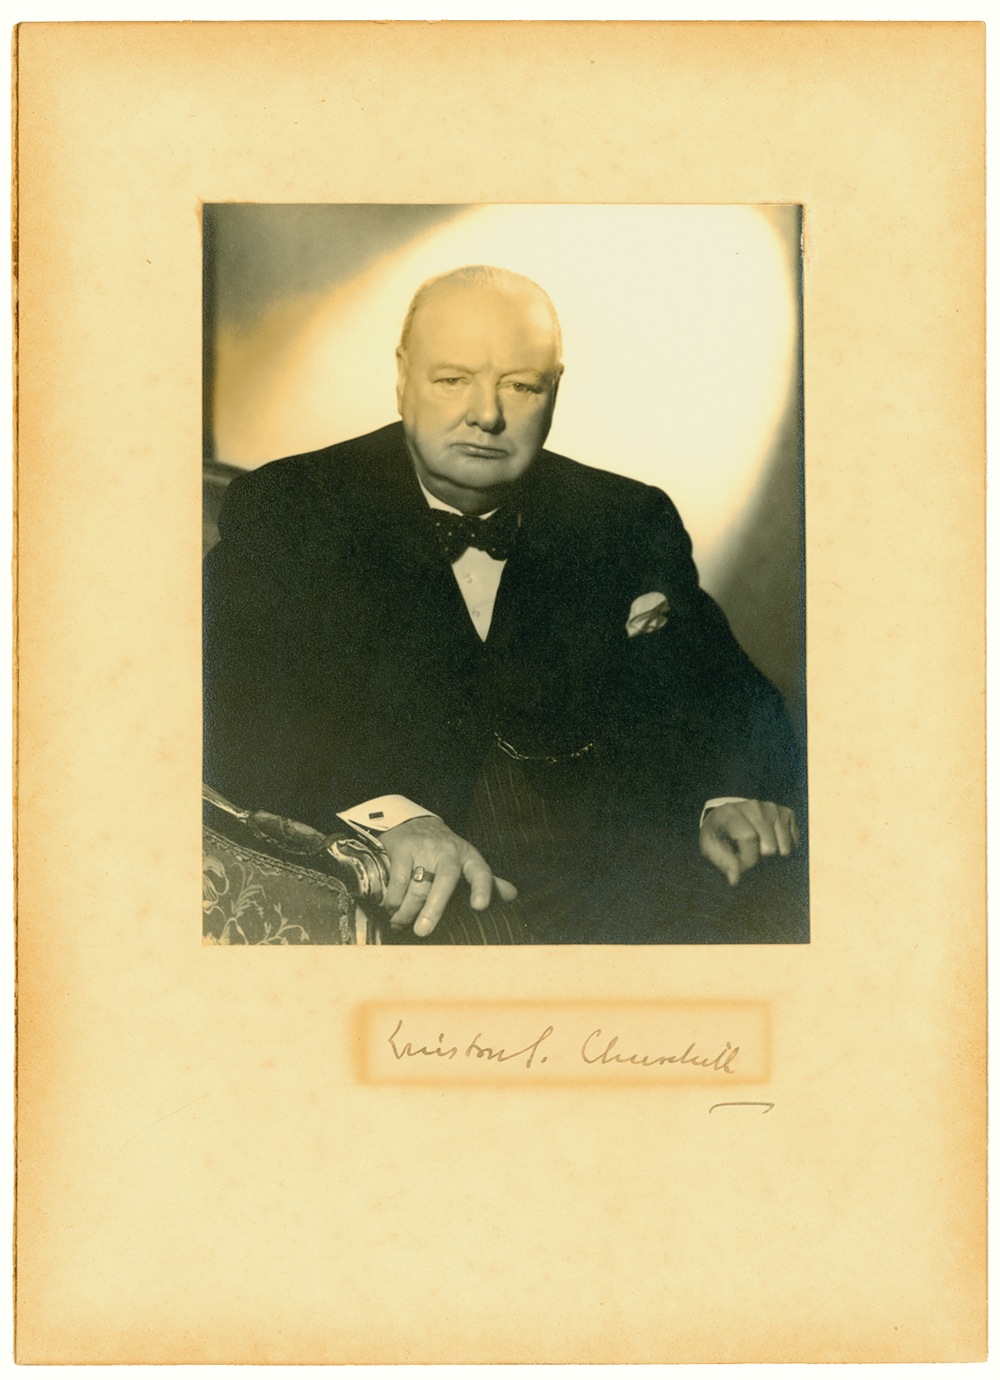 Lot #249 Winston Churchill